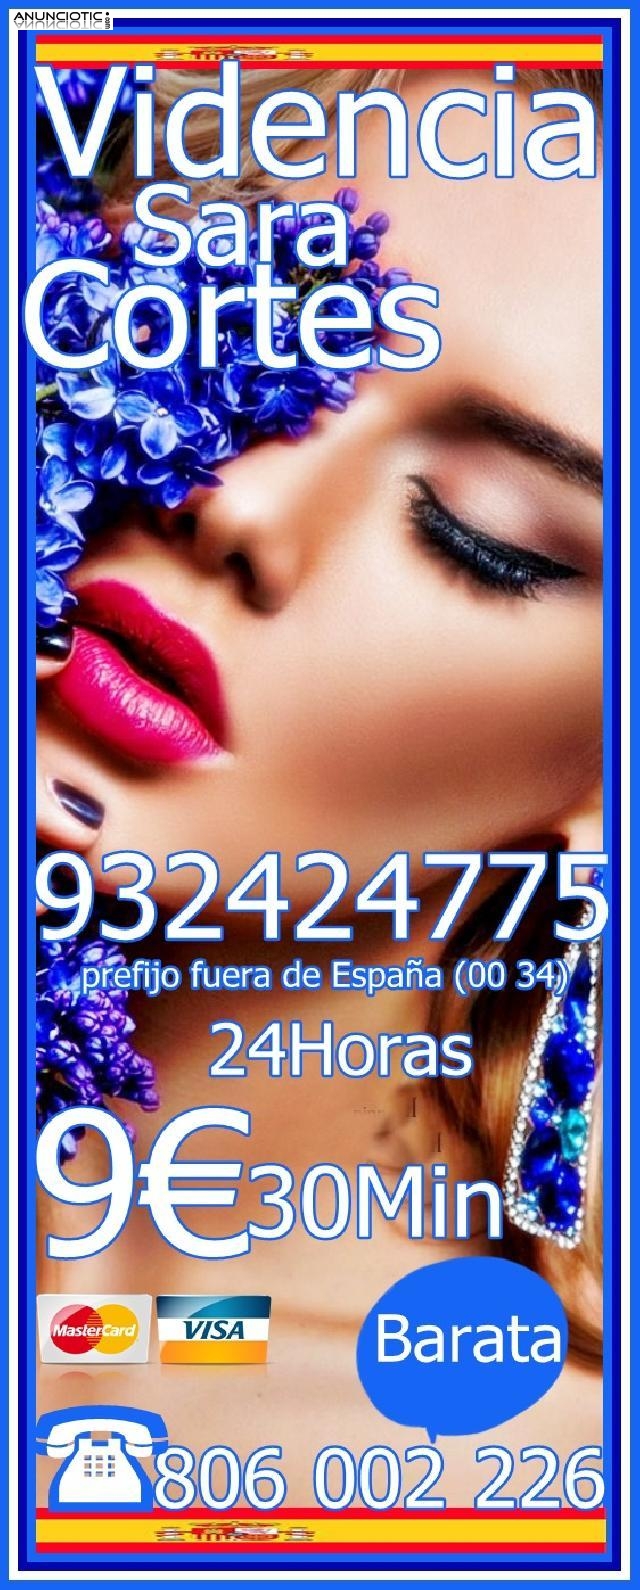  Videncia Sara Cortes Hechicera 932 424 775 desde 4 15mts, 7 20mts y 9 3